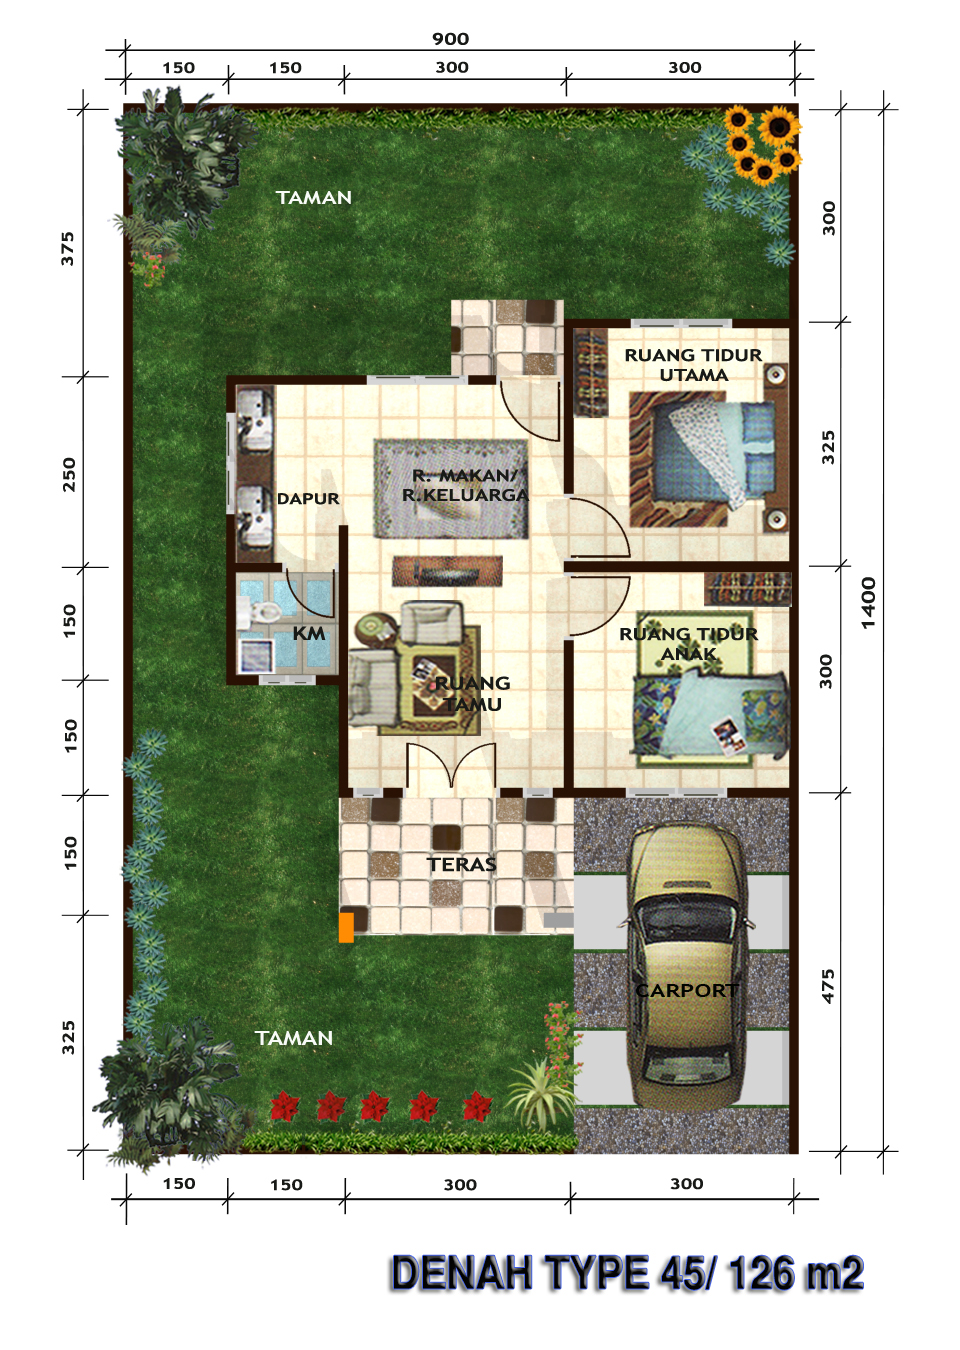 Studio Arsitek 97: Desain rumah tinggal